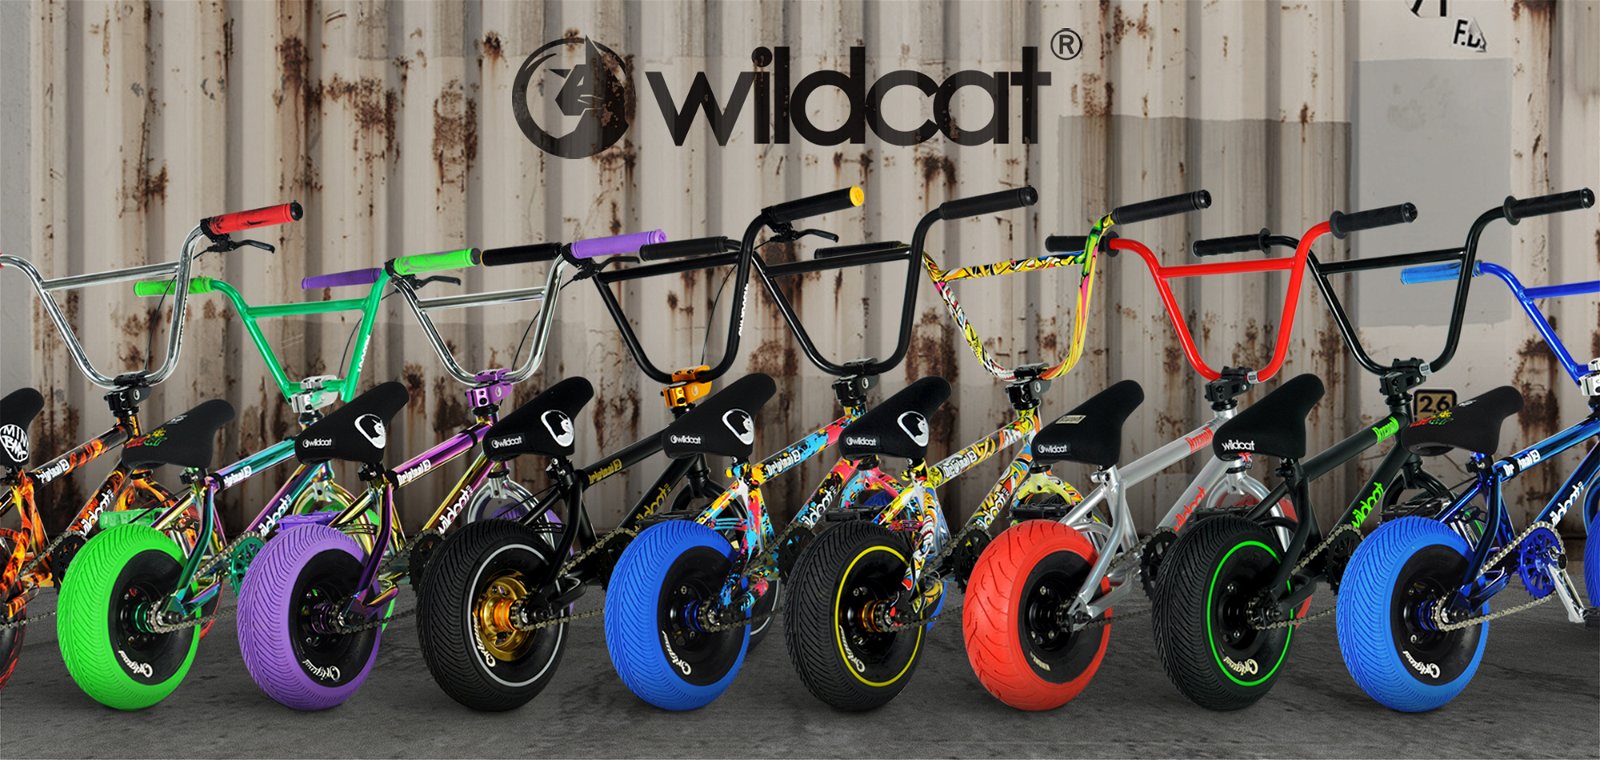 wildcats mini bmx